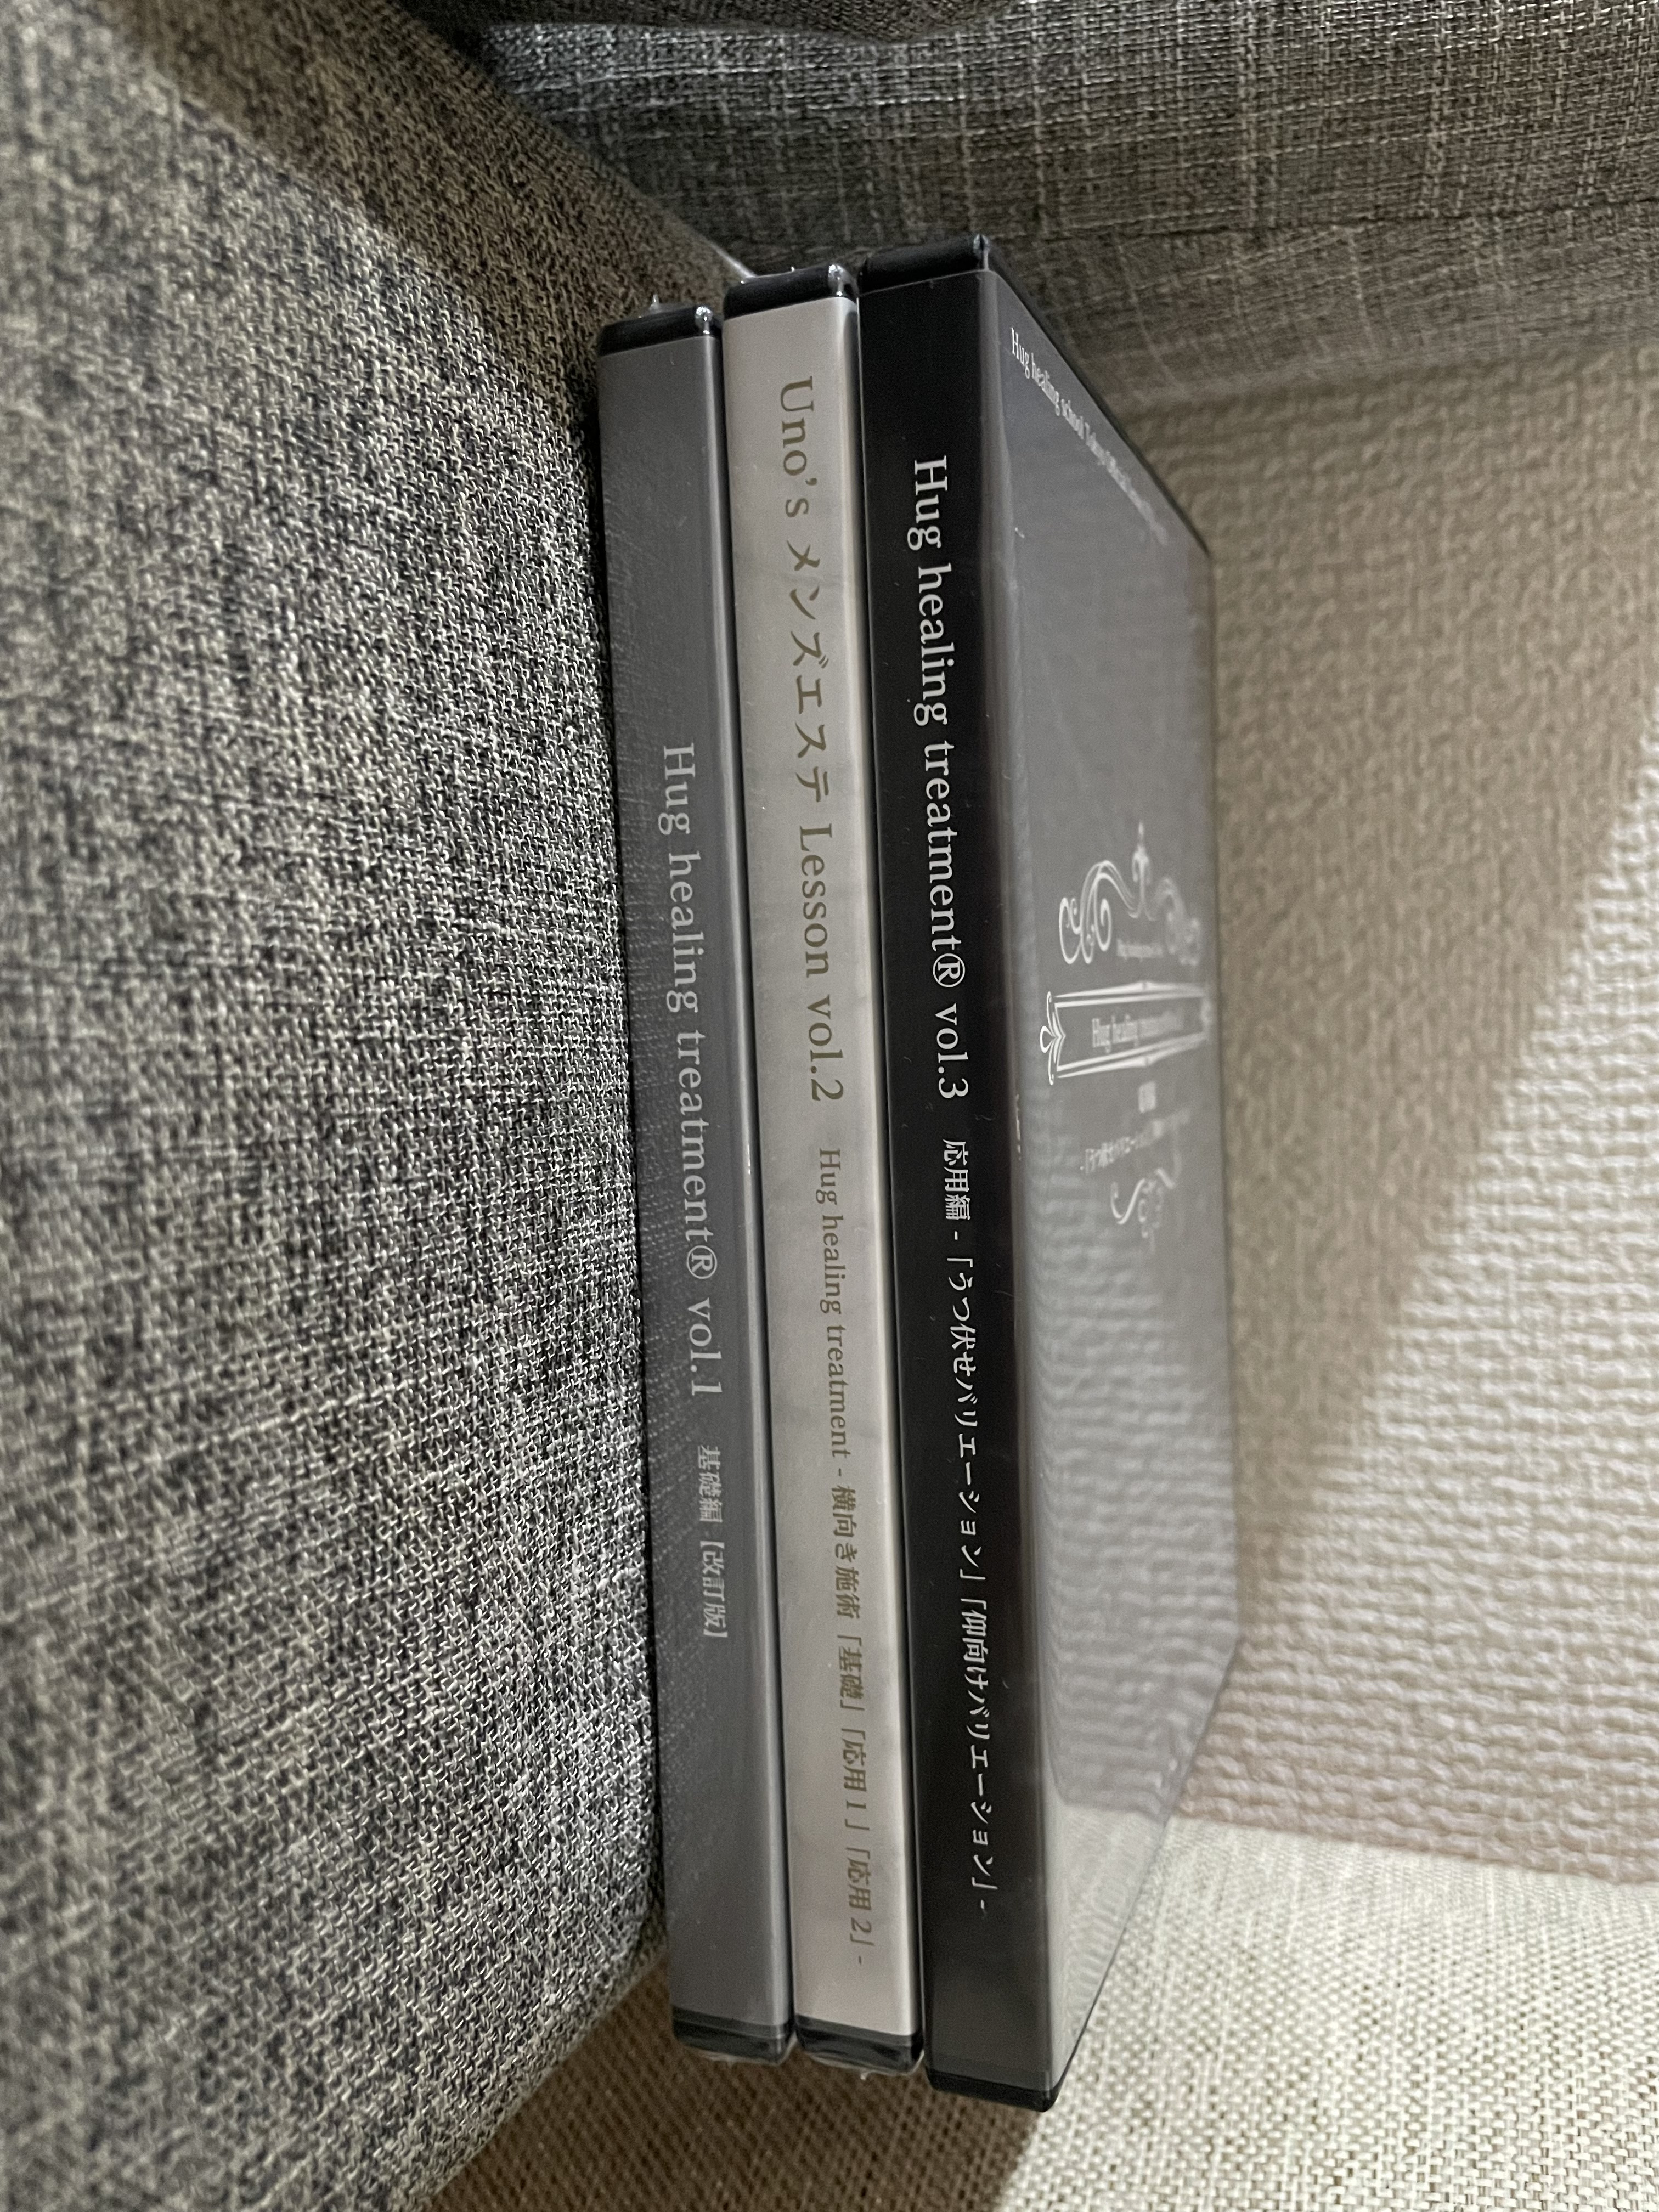 ハグヒーリング Uno´s メンズエステレッスン DVD 基礎編 vol.2-